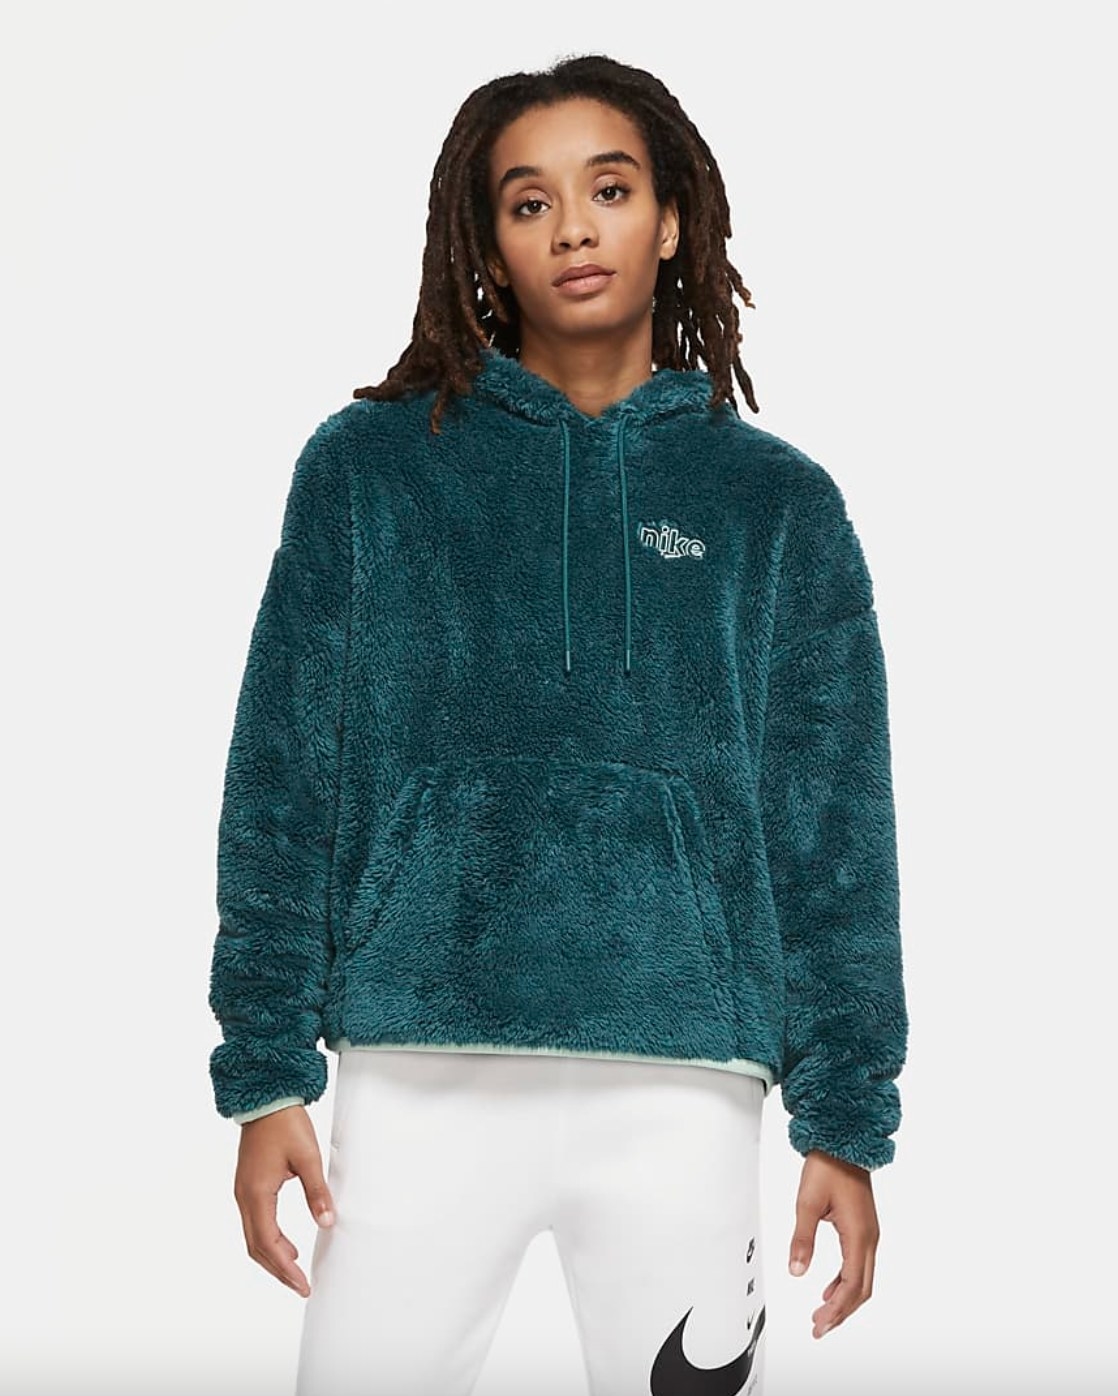 The fuzzy sportswear hoodie in blue/green